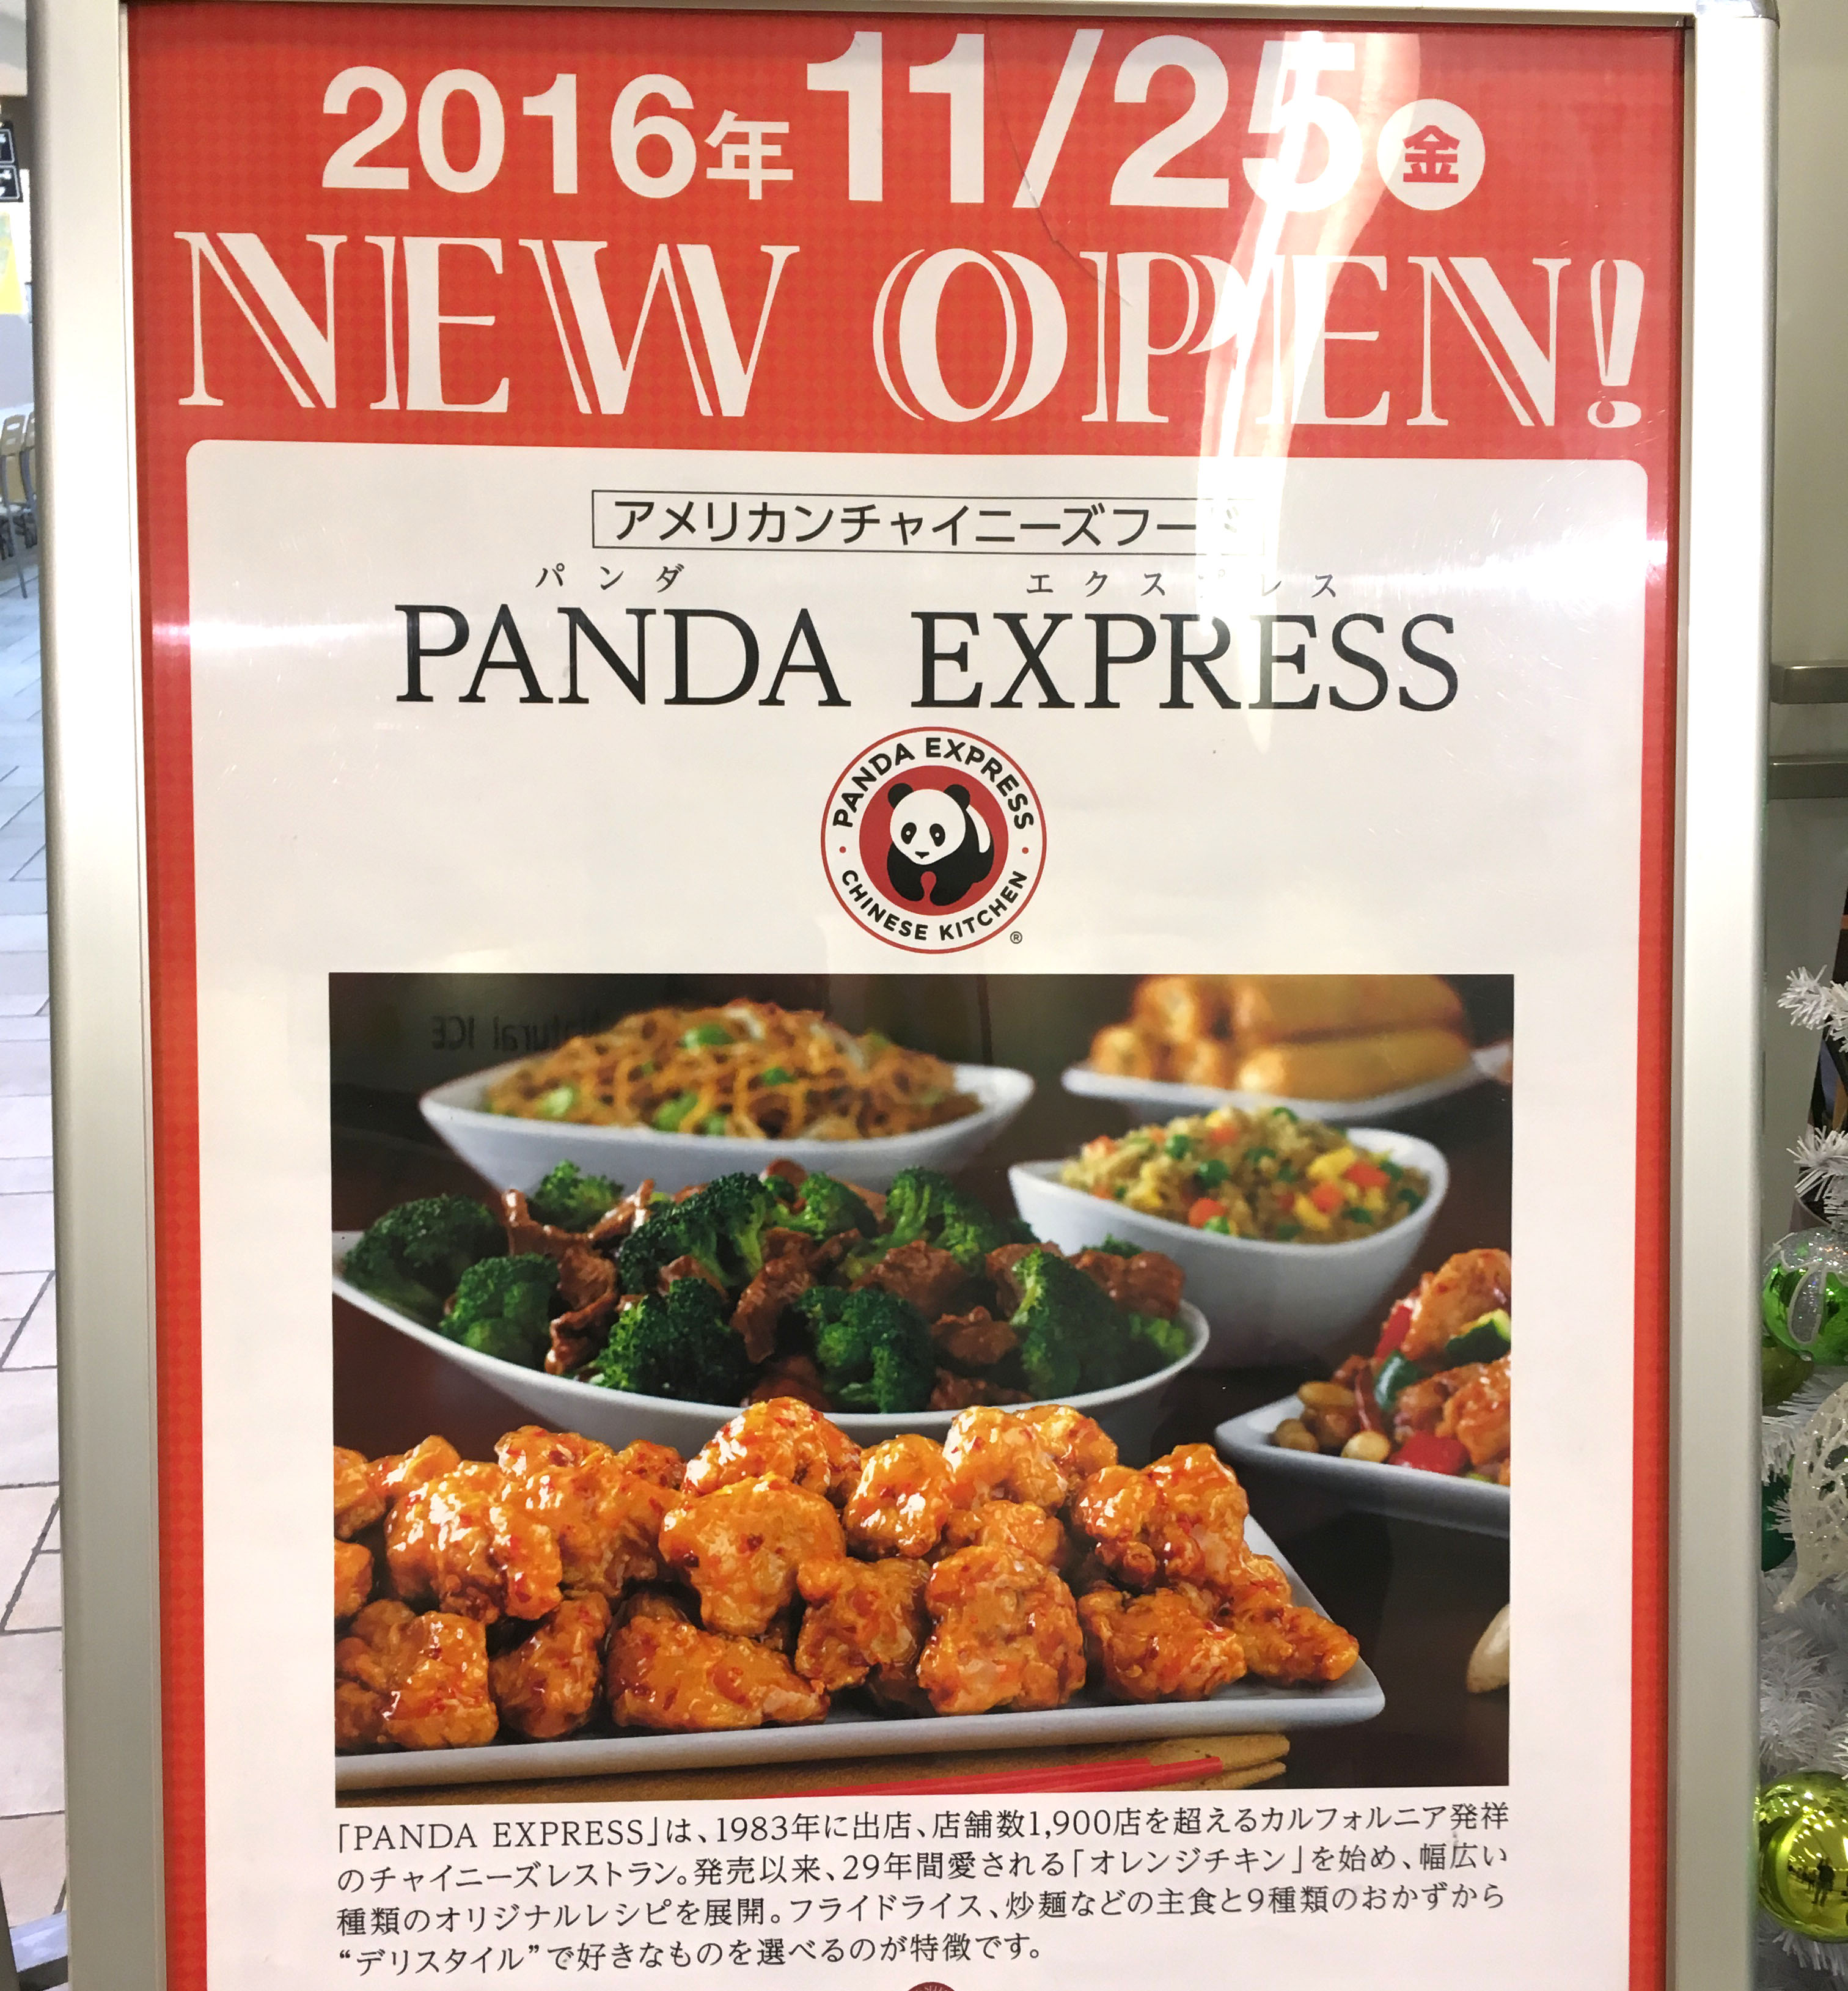 日本再上陸 アメリカ発の中華料理 パンダエクスプレス に行ってみた 意外と早く撤退することになるかも ロケットニュース24